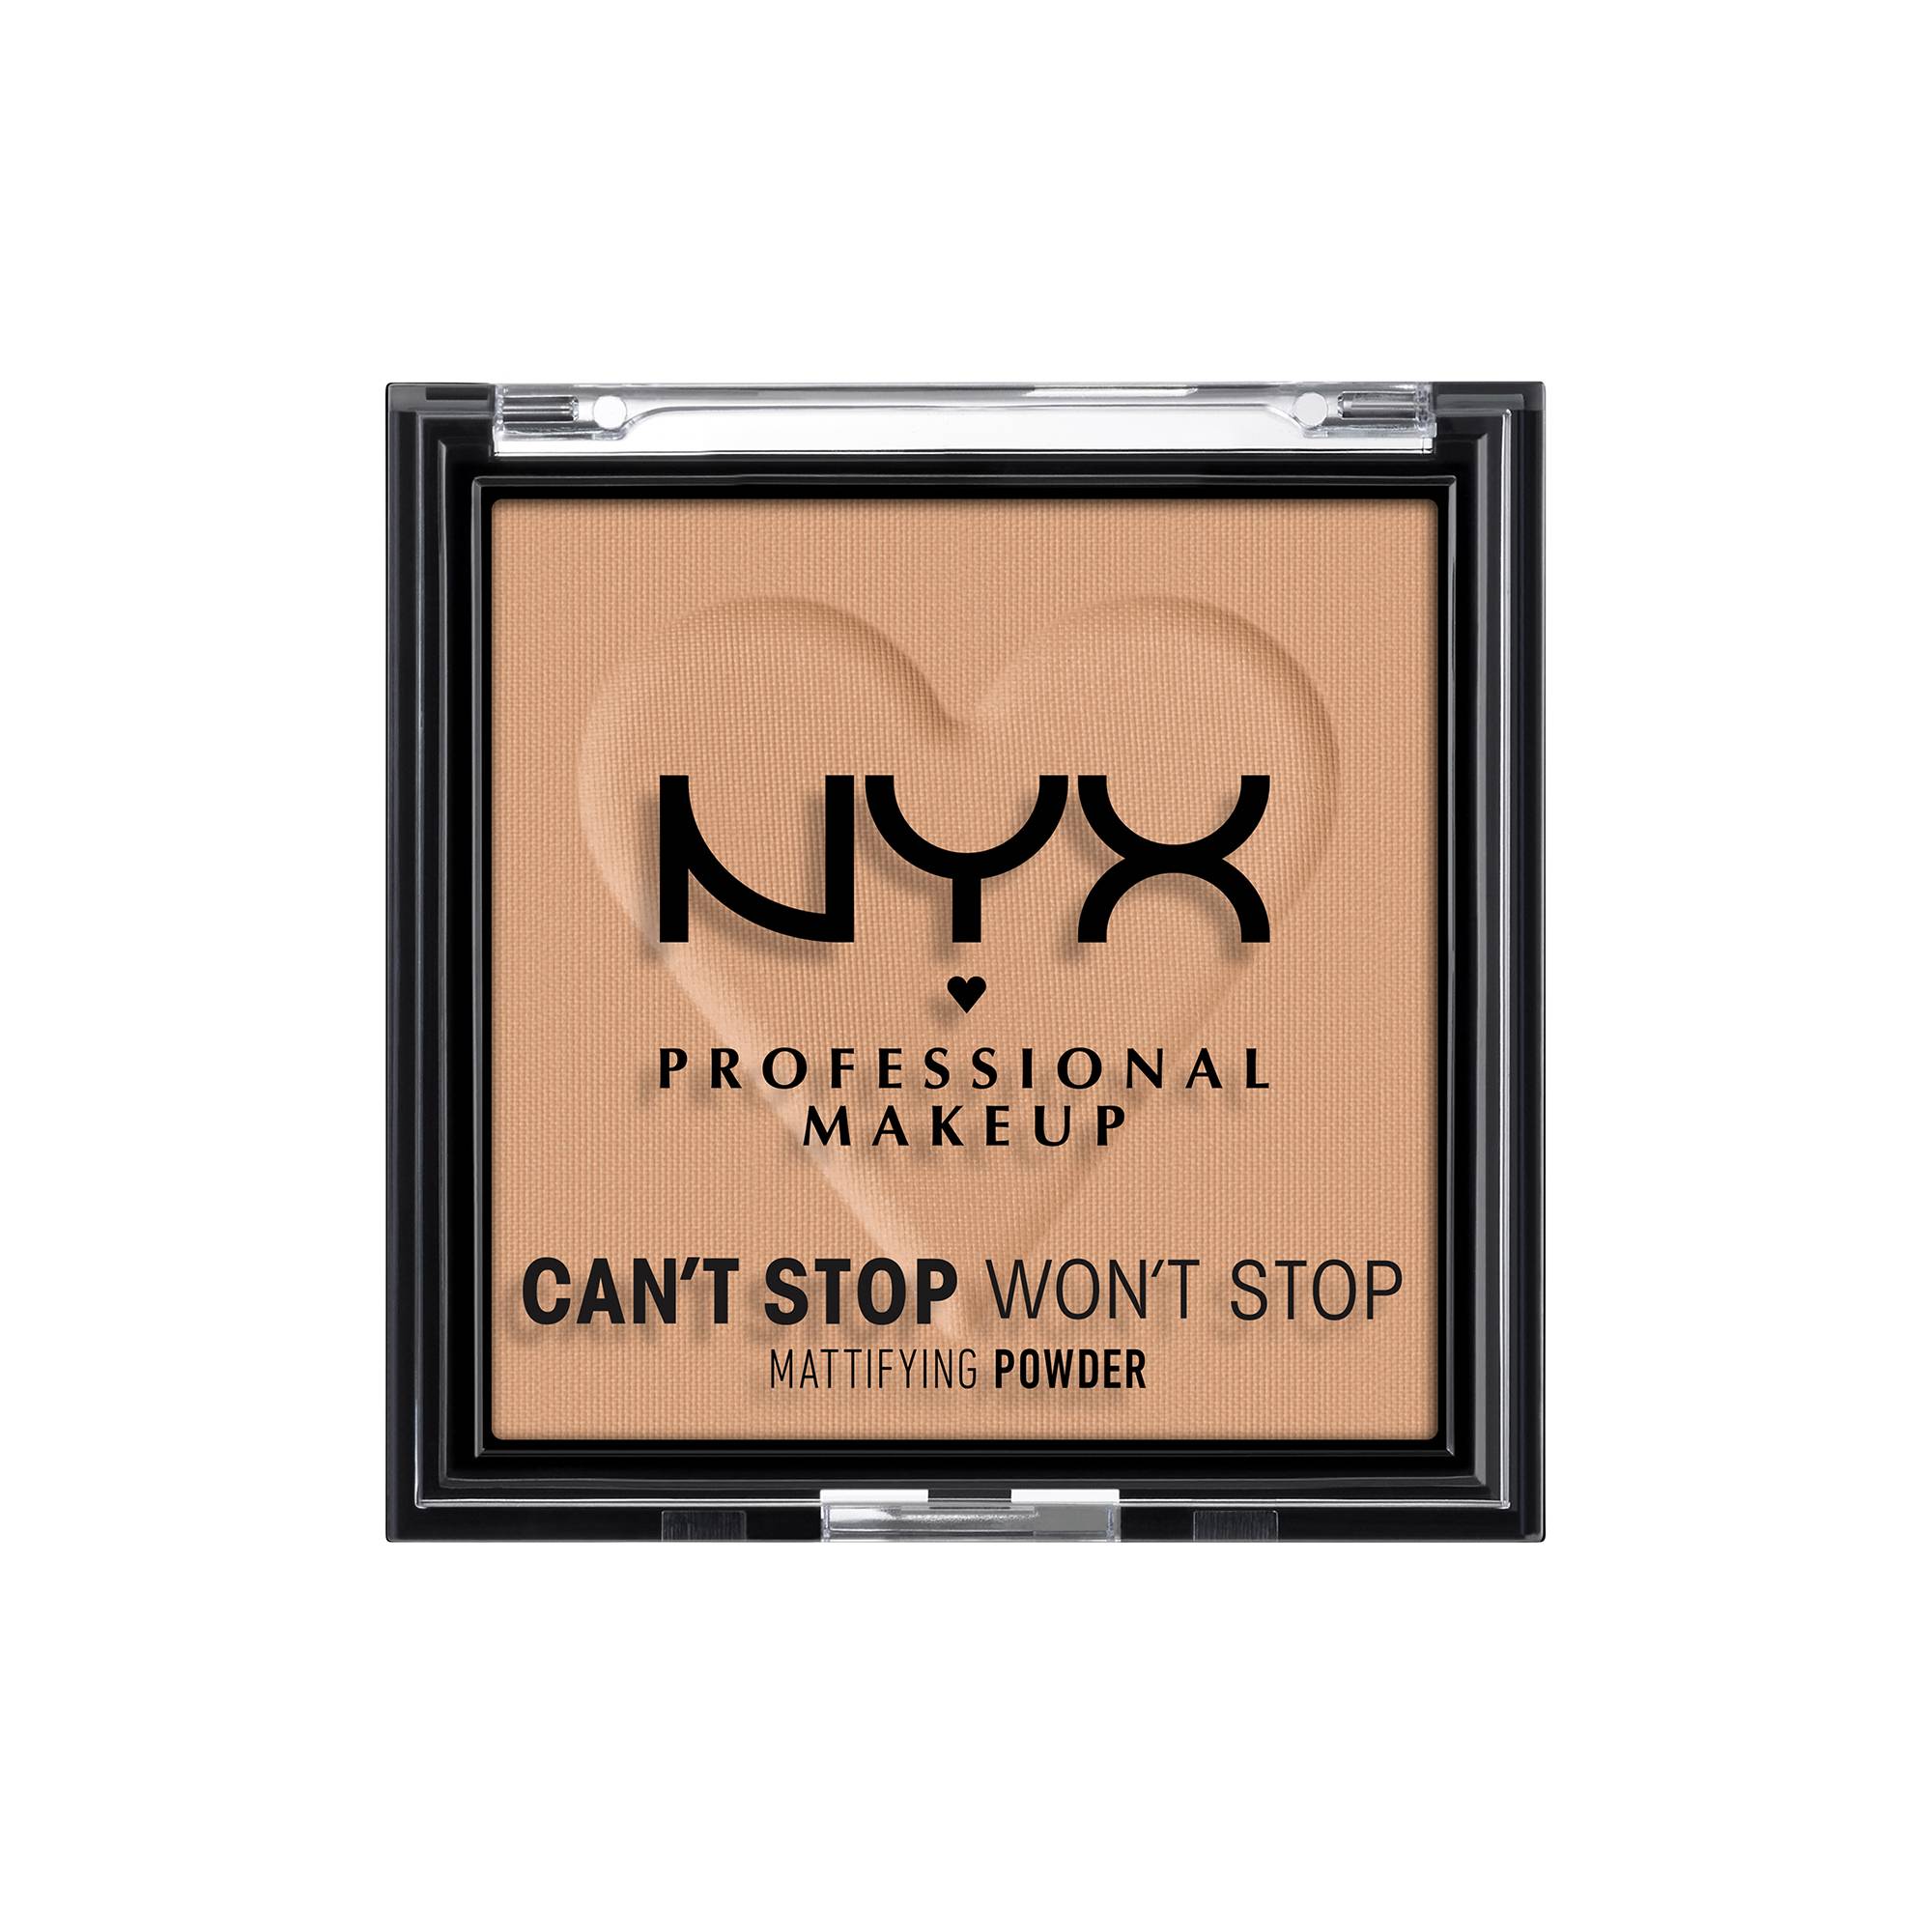 Poudre matifiante Can't Stop Won't Stop Tan de la marque NYX Professional Makeup - 1